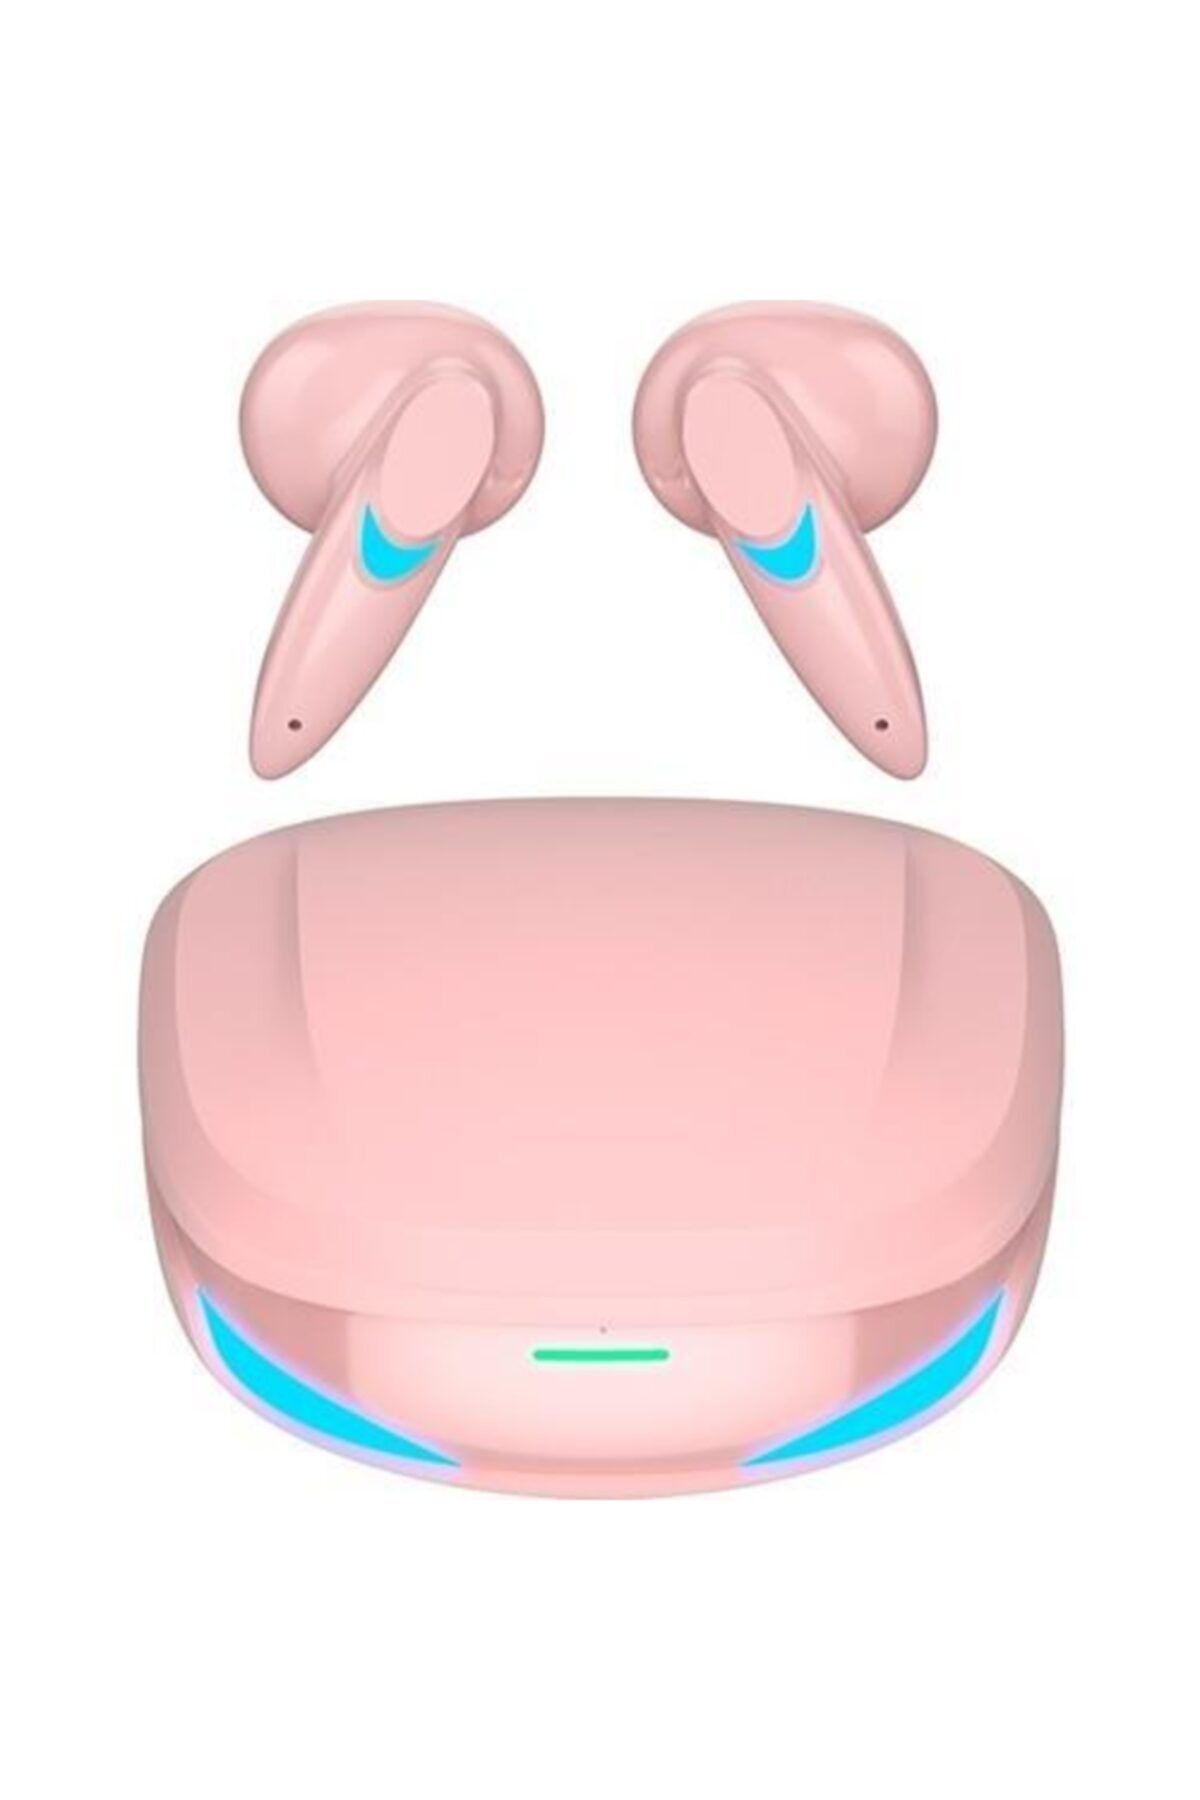 Torima Kablosuz Oyuncu Kulaklığı Rgb Işıklı Çift Mikrofonlu 3 Modlu Bluetooth 5.2 Yeni Nesil Tg-g10 Pembe